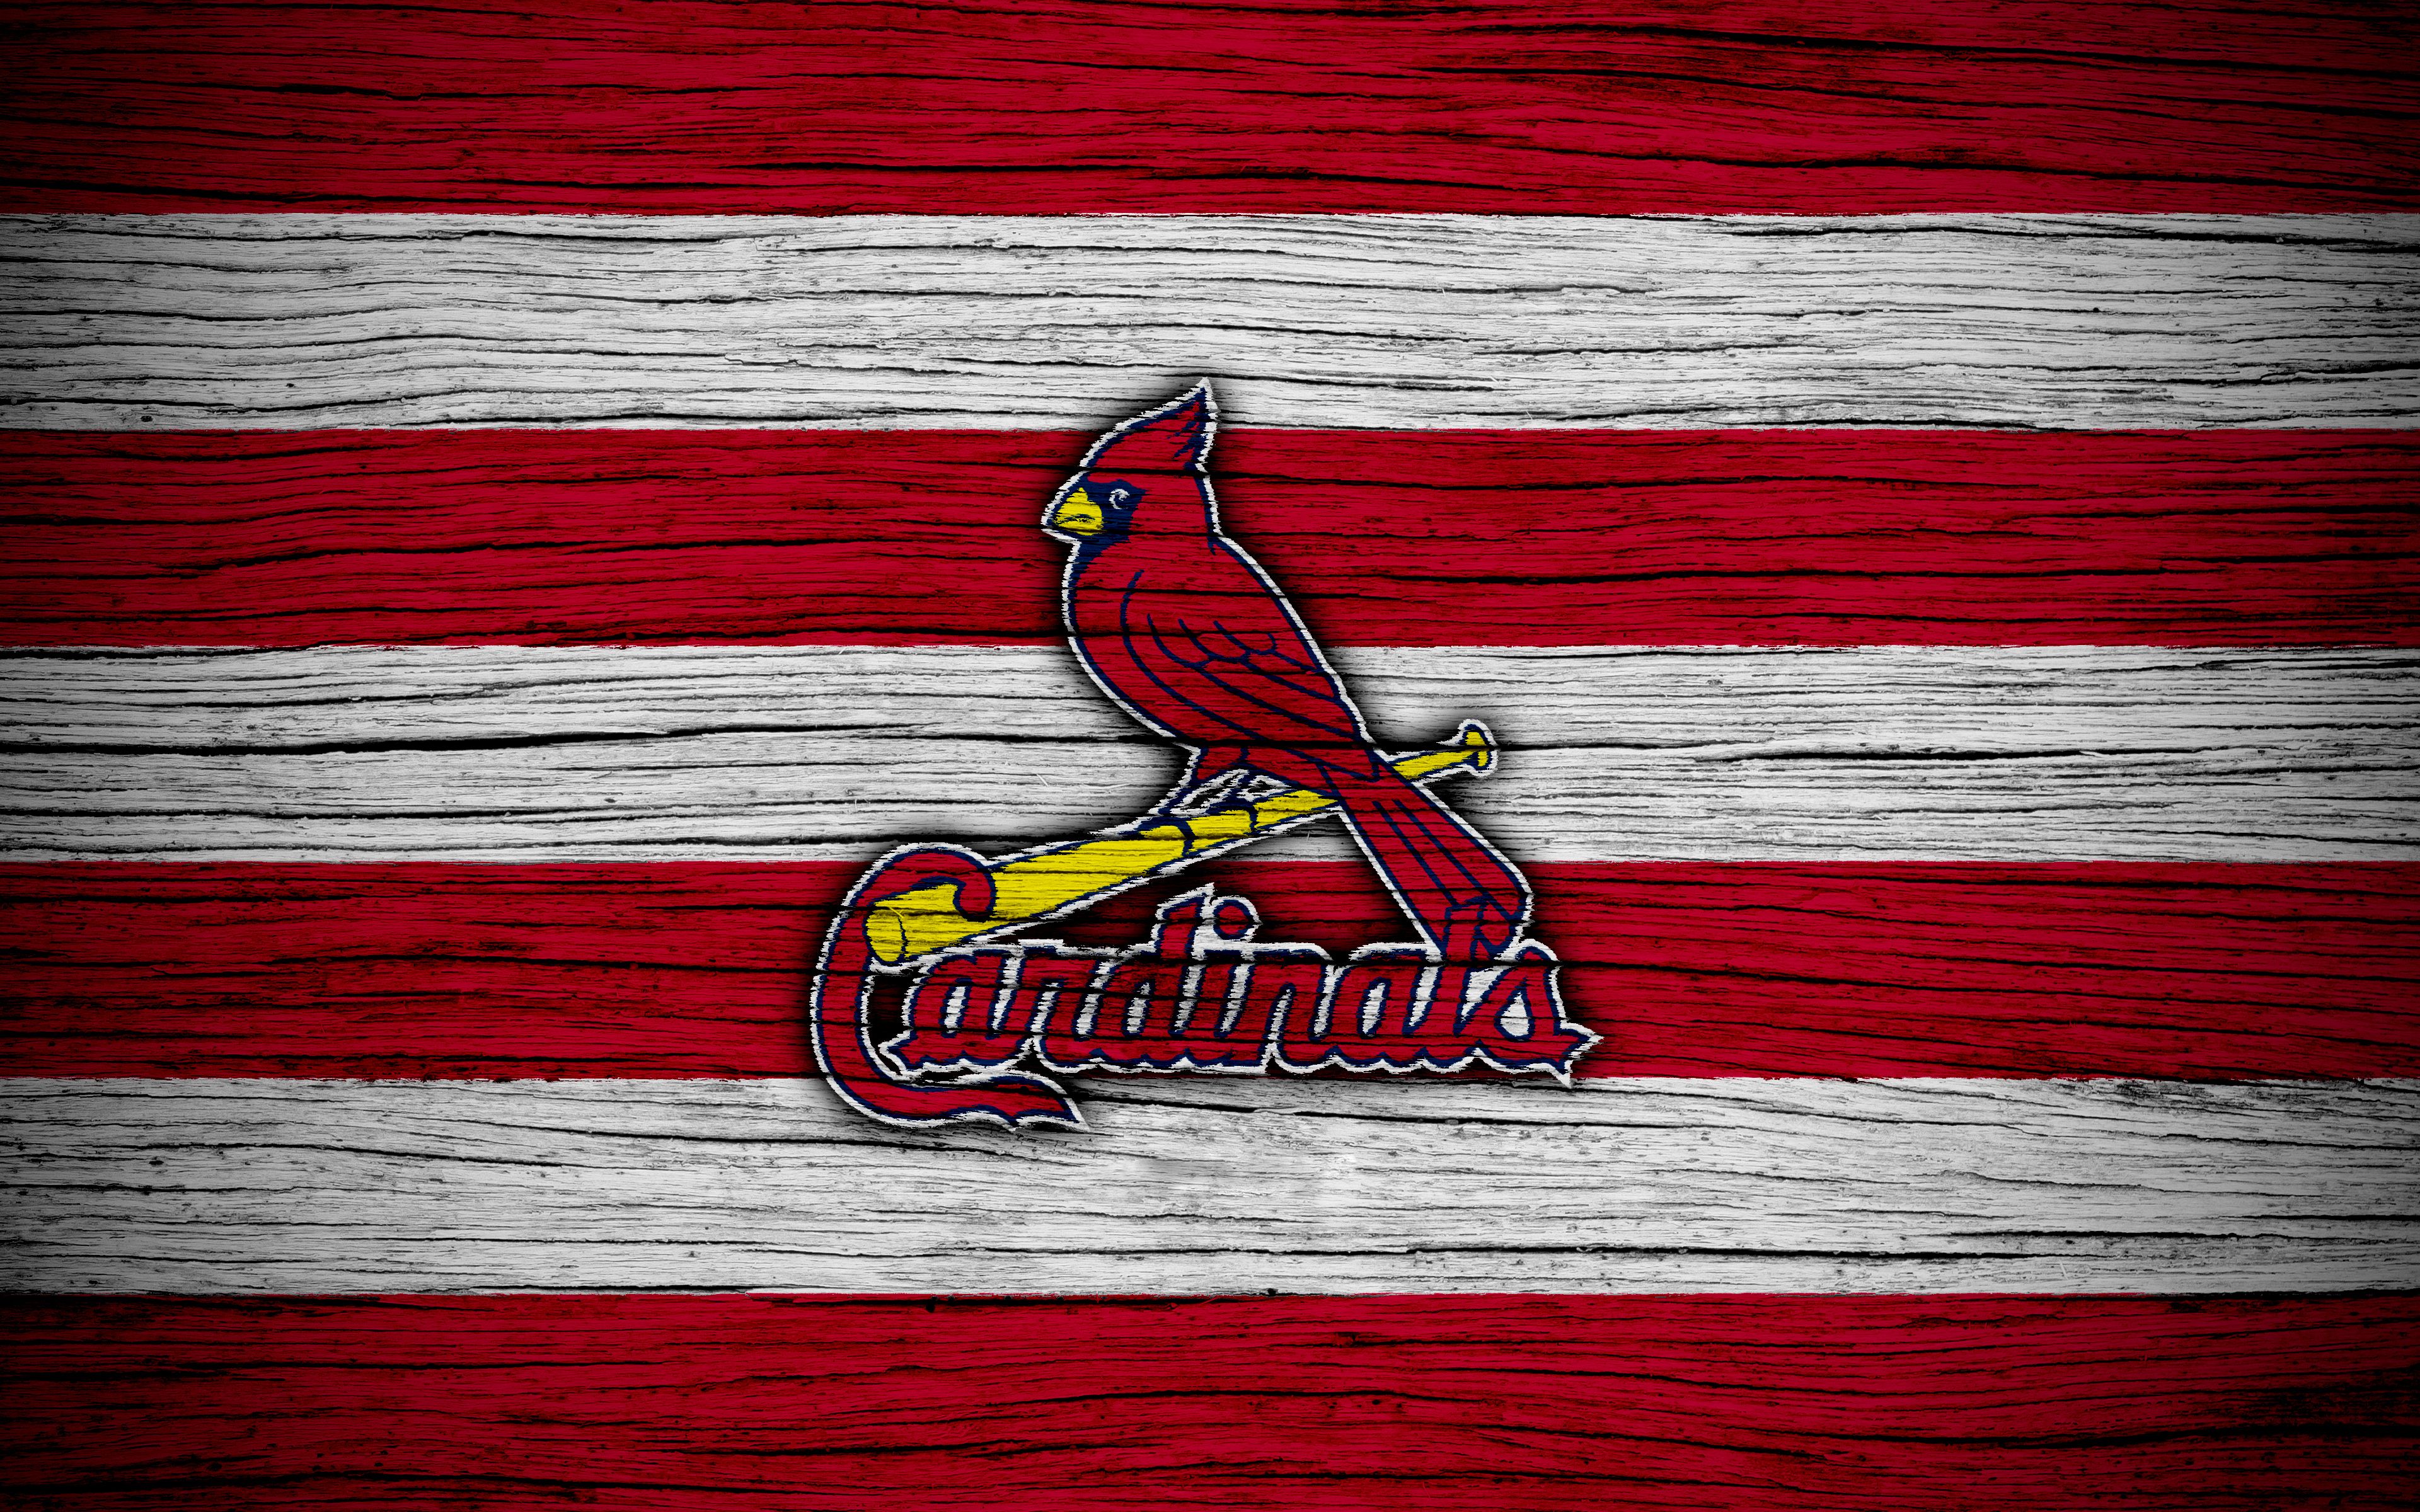 St. Louis Cardinals 4k Ultra HD Wallpaper